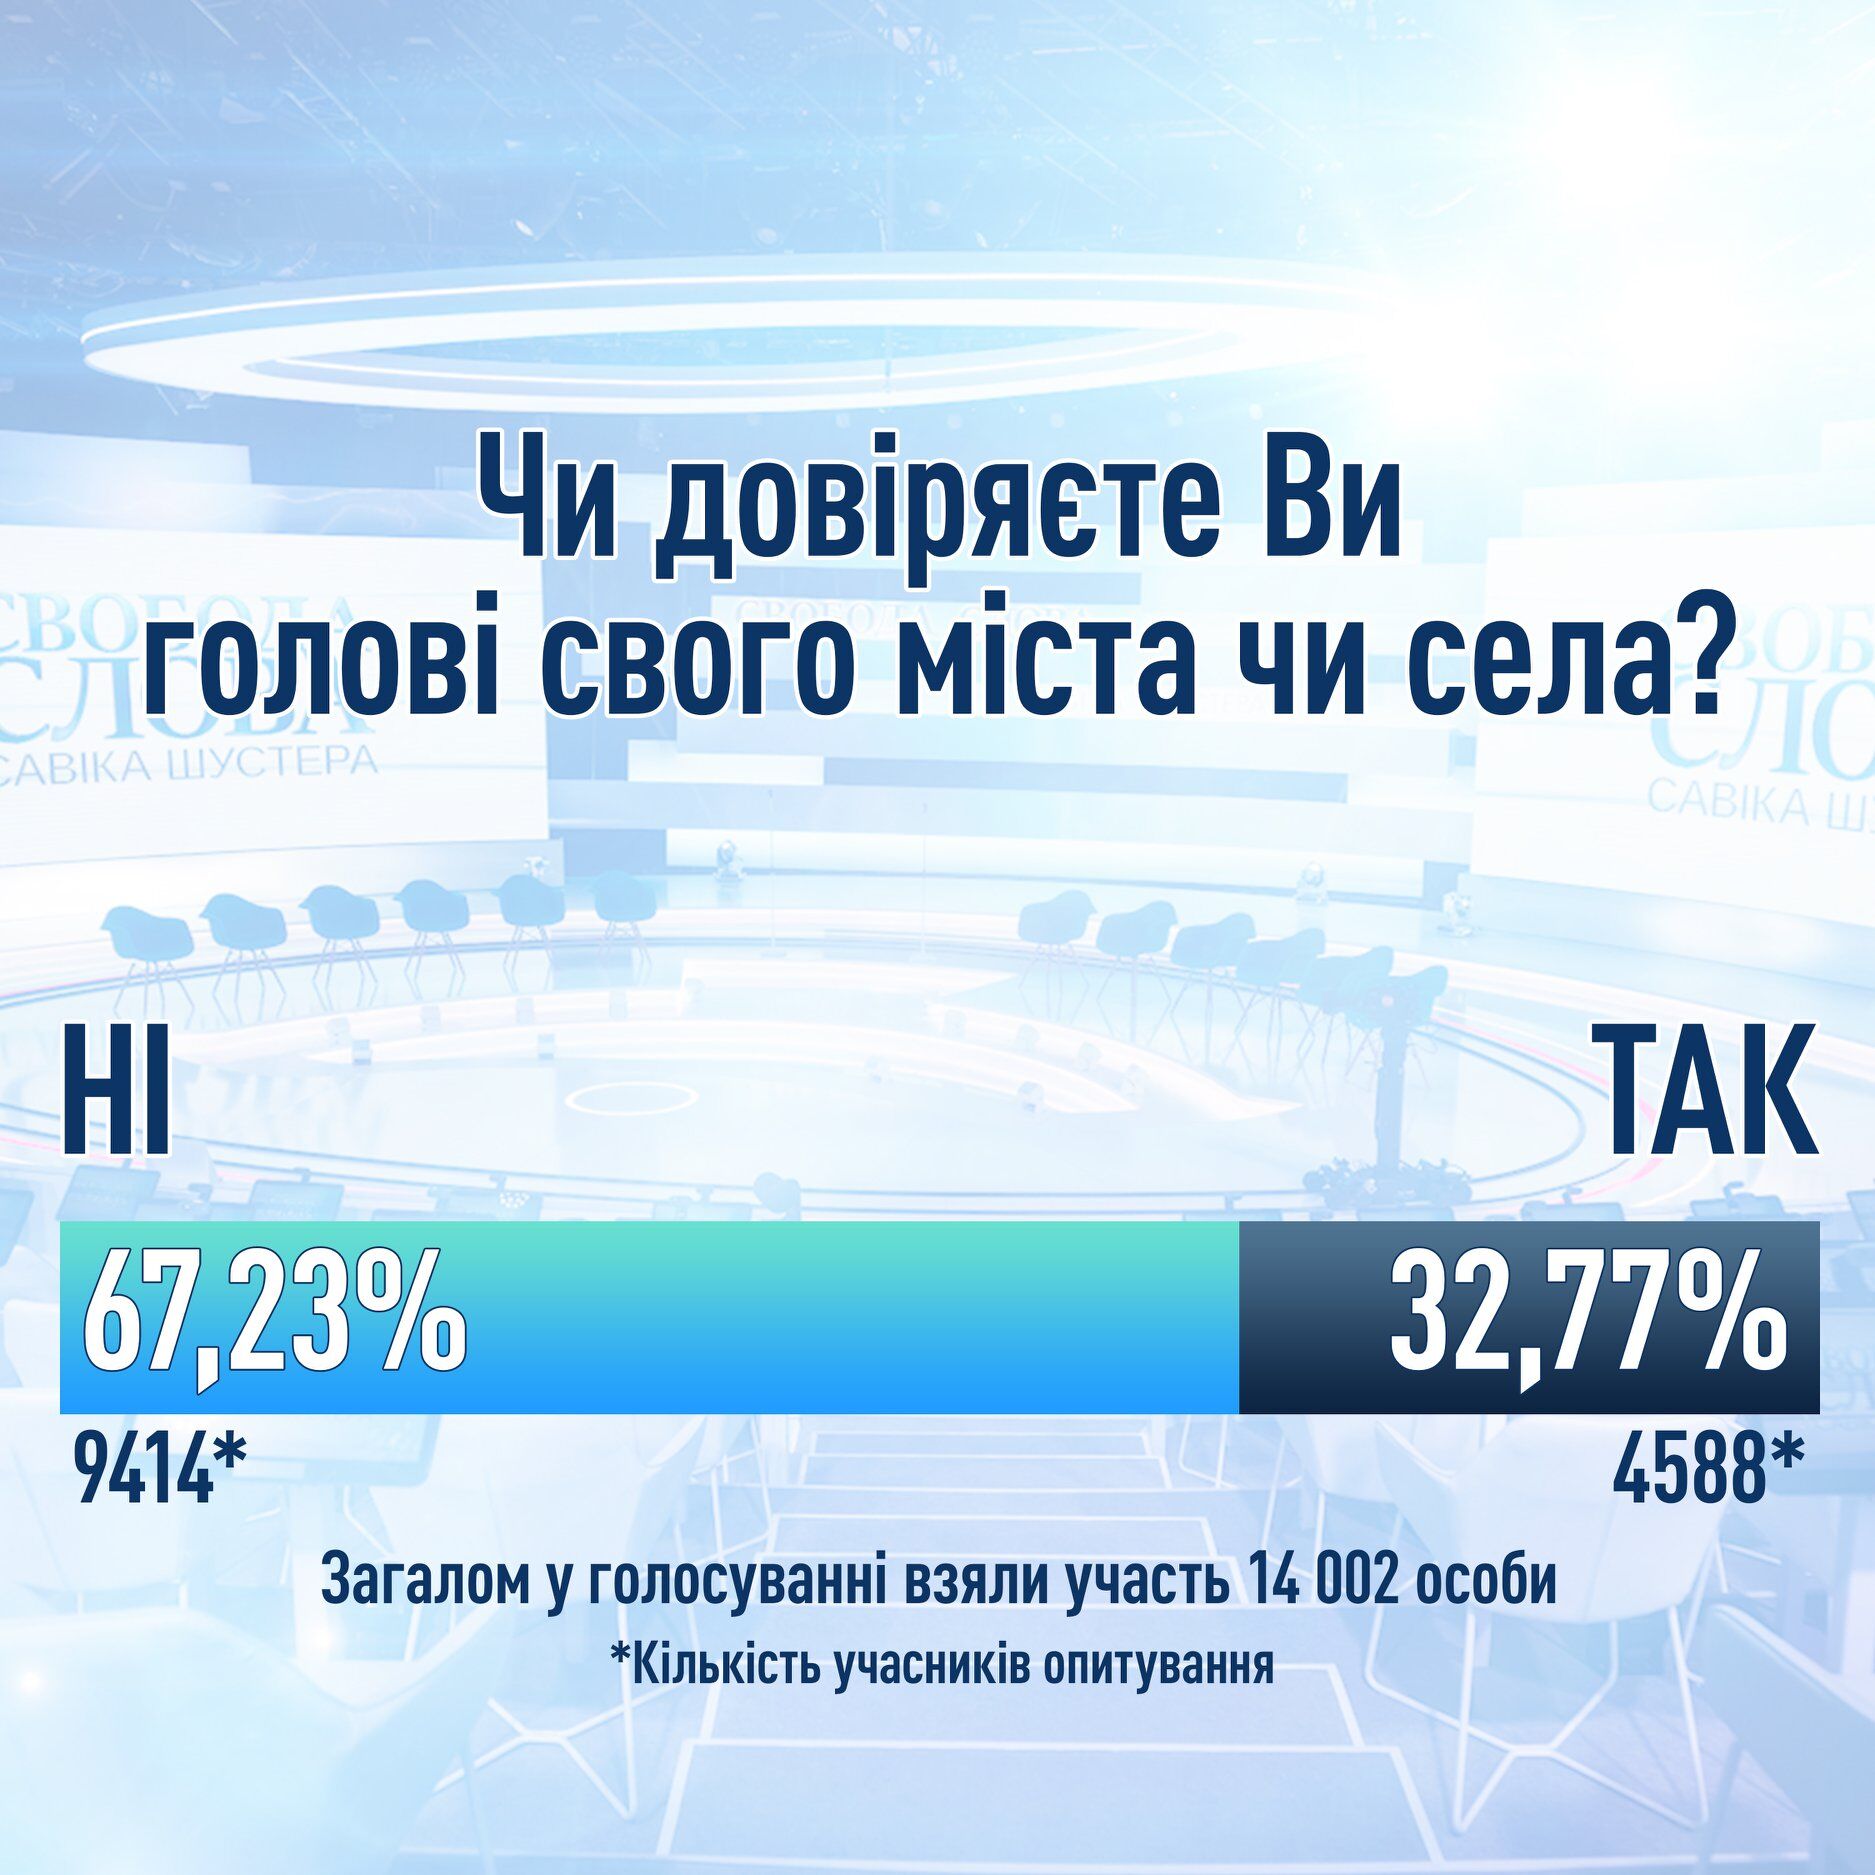 З'ясувалося, скільки відсотків українців довіряє місцевій владі. Соцопитування